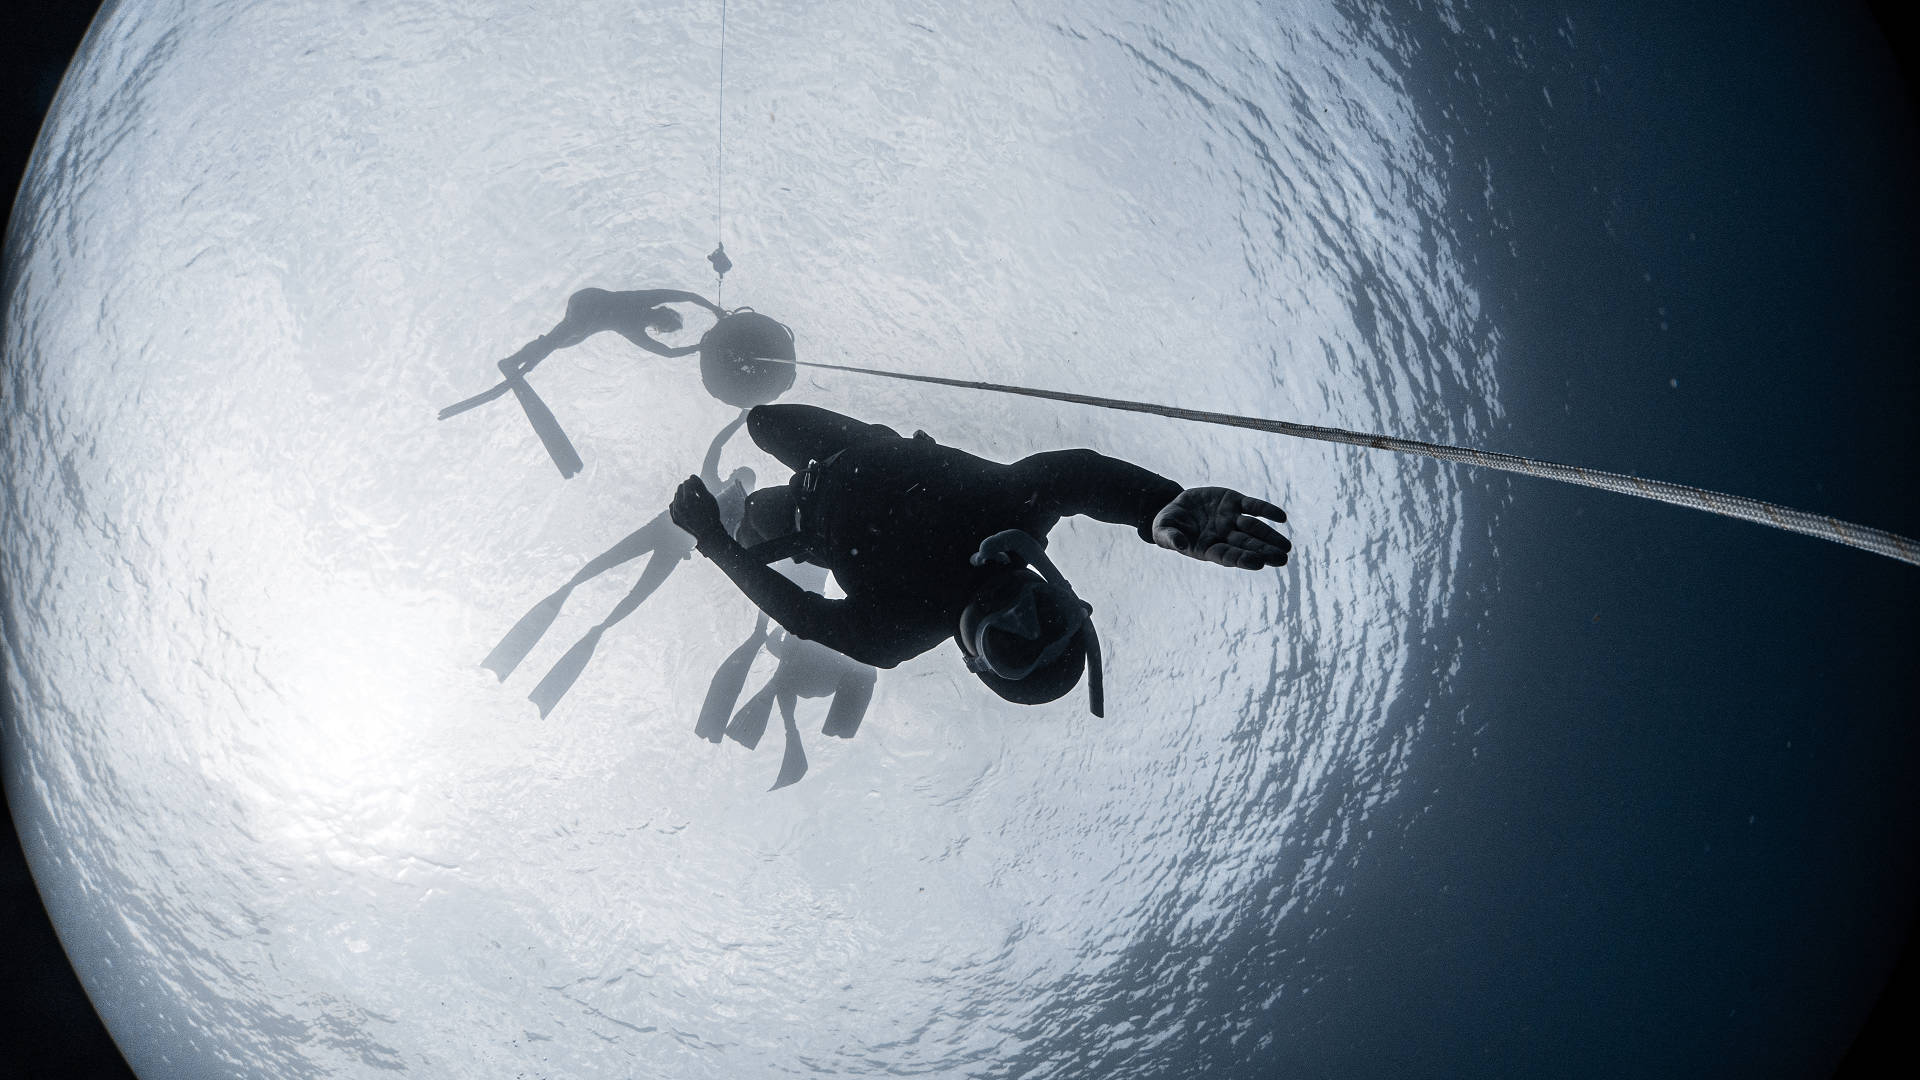 潛水課程 首選 潛水大本營 專營龜山島潛水、自由潛水、漁獵、船潛